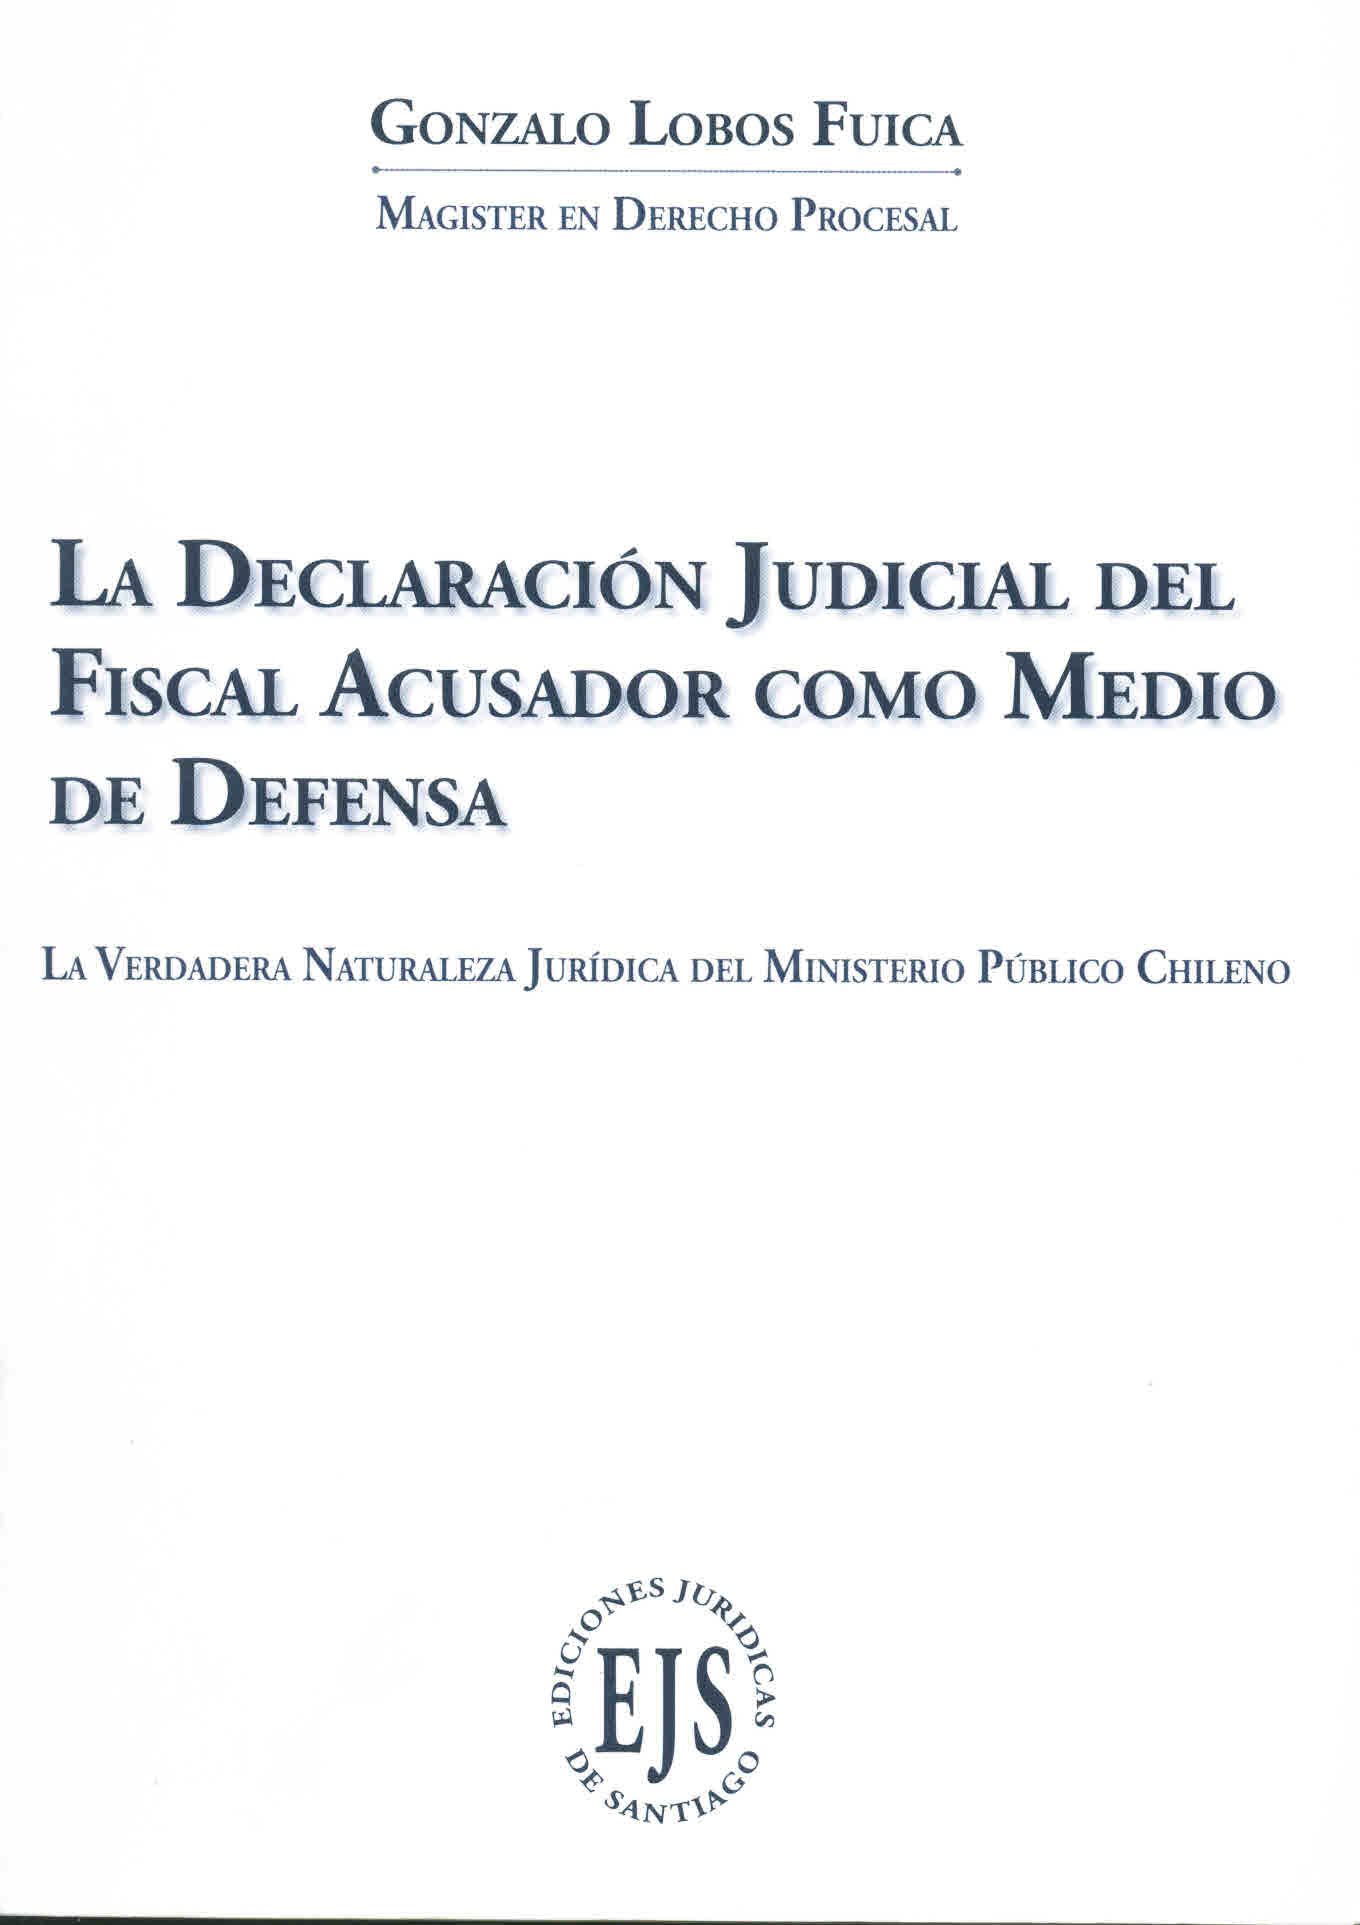 La declaración judicial del fiscal como medio de defensa. La verdadera naturaleza jurídica del ministerio público chileno